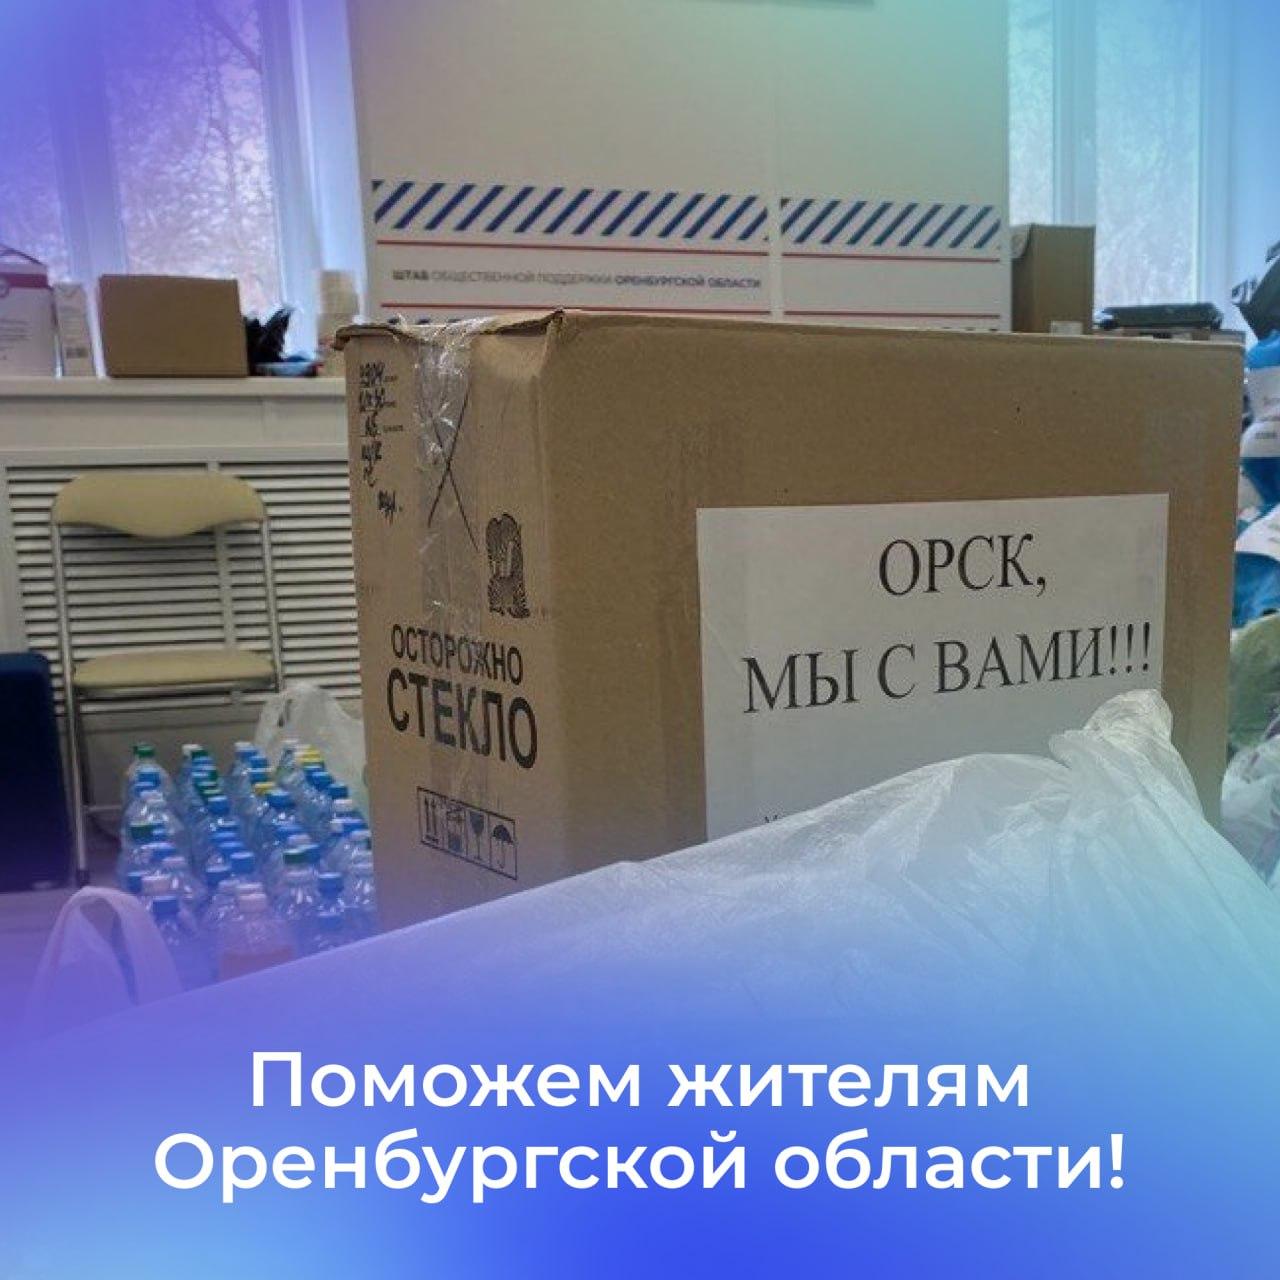 Ульяновцы могут помочь жителям Оренбургской области.